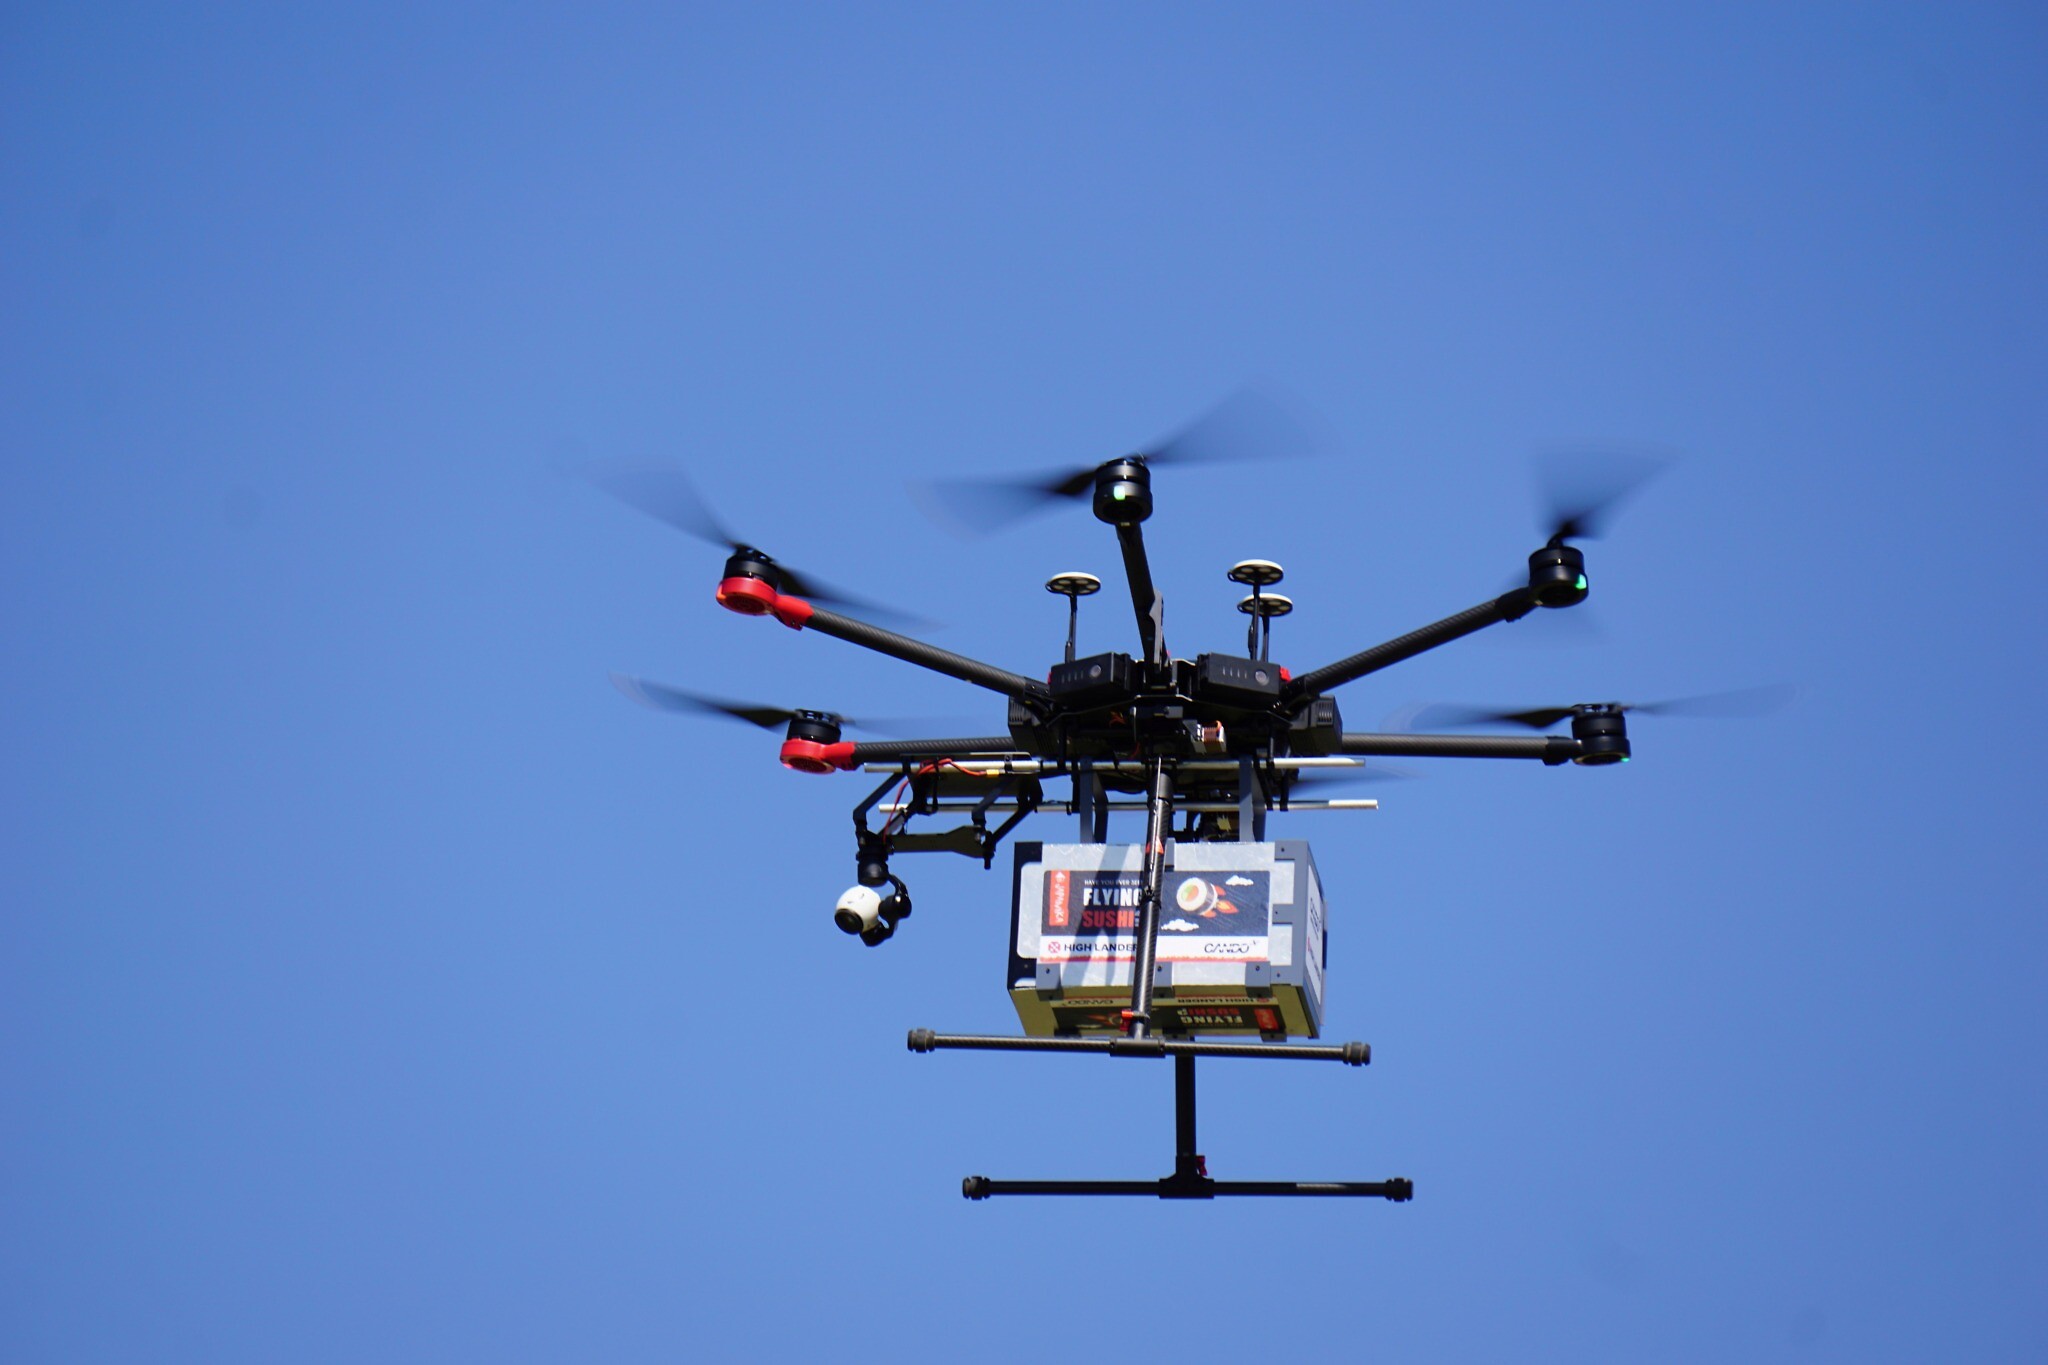 gemakkelijk Halve cirkel Associëren Drones deliver sushi, beer in Tel Aviv as Israel tests commercial UAVs |  The Times of Israel